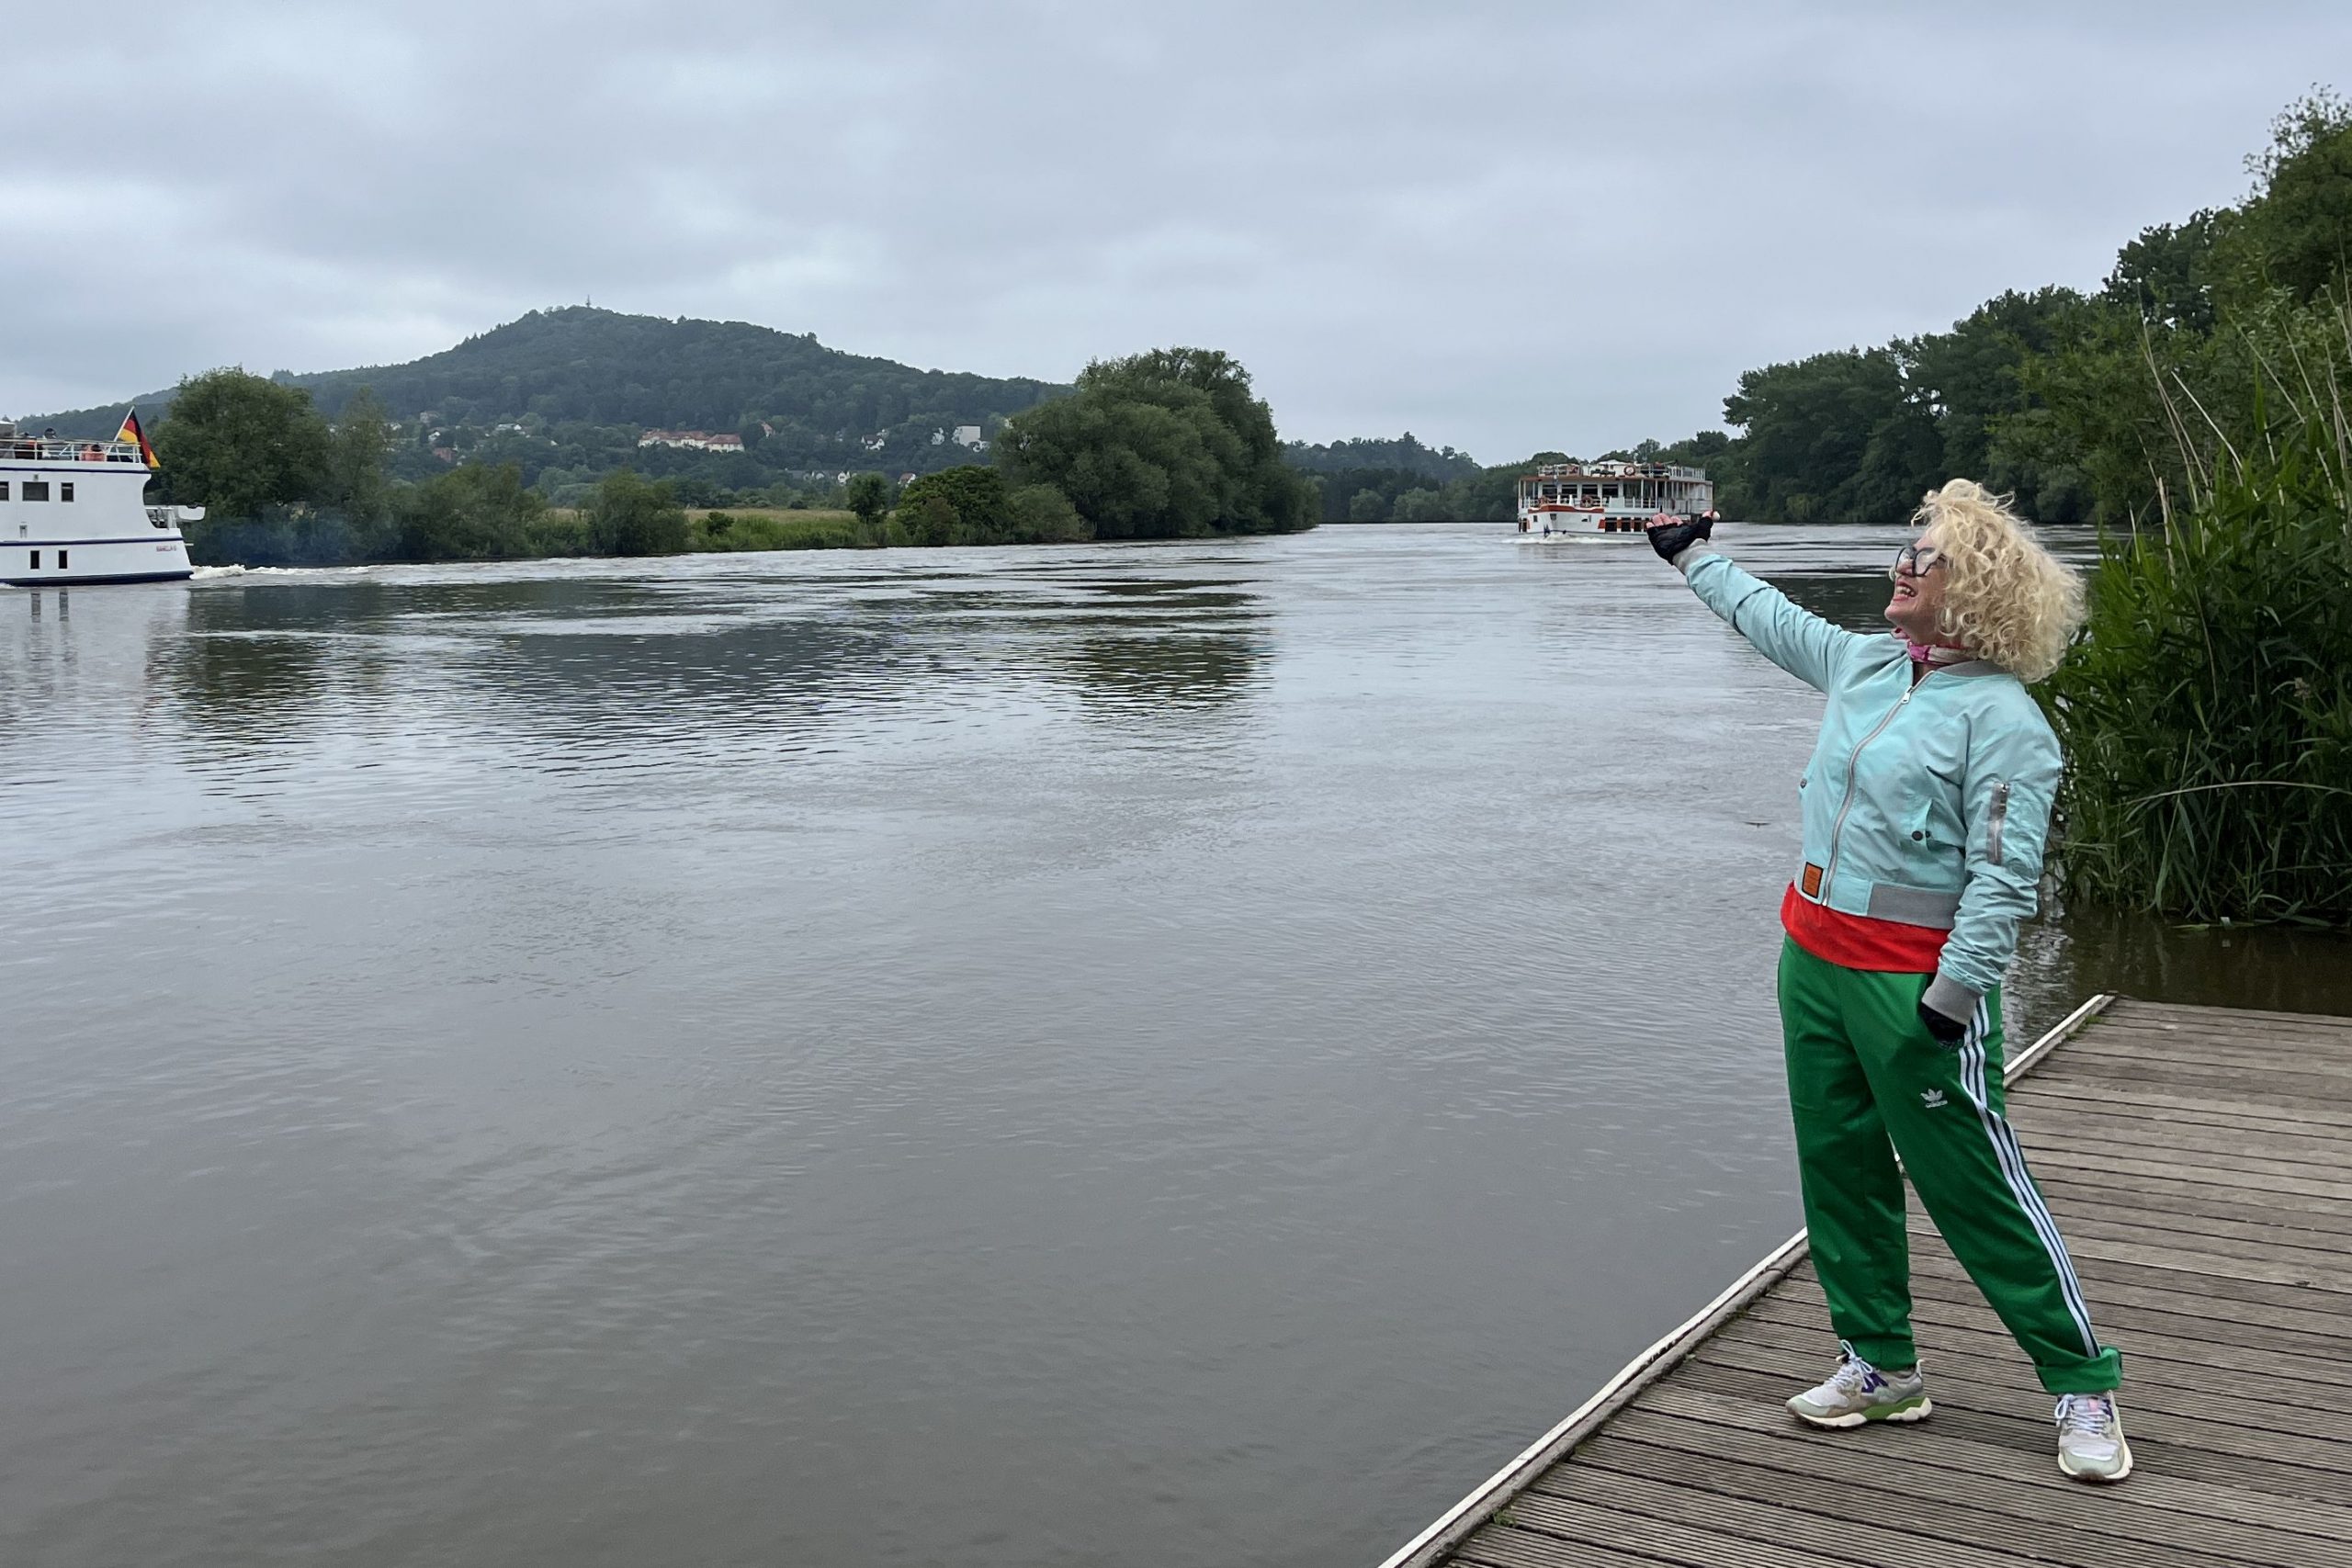 Zwei Schiffe auf der Weser, davor steht eine Person auf dem Steg und zeigt auf das hintere Schiff